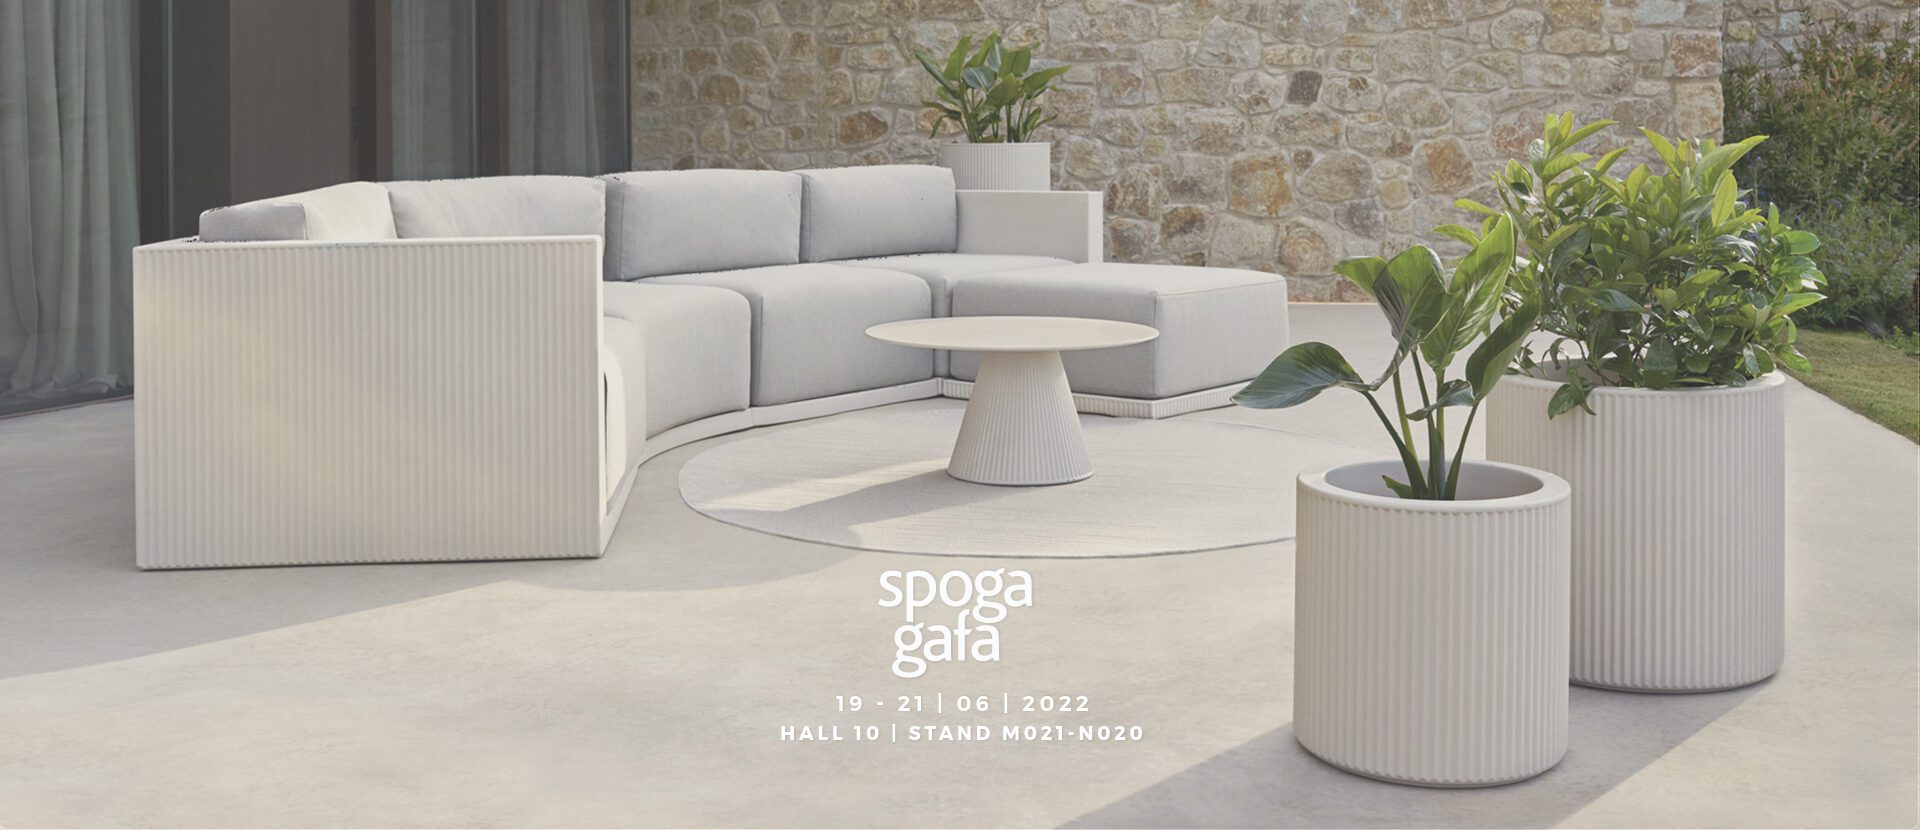 Vondom´s garden furniture will be exhibited at Spoga Gafa 2022